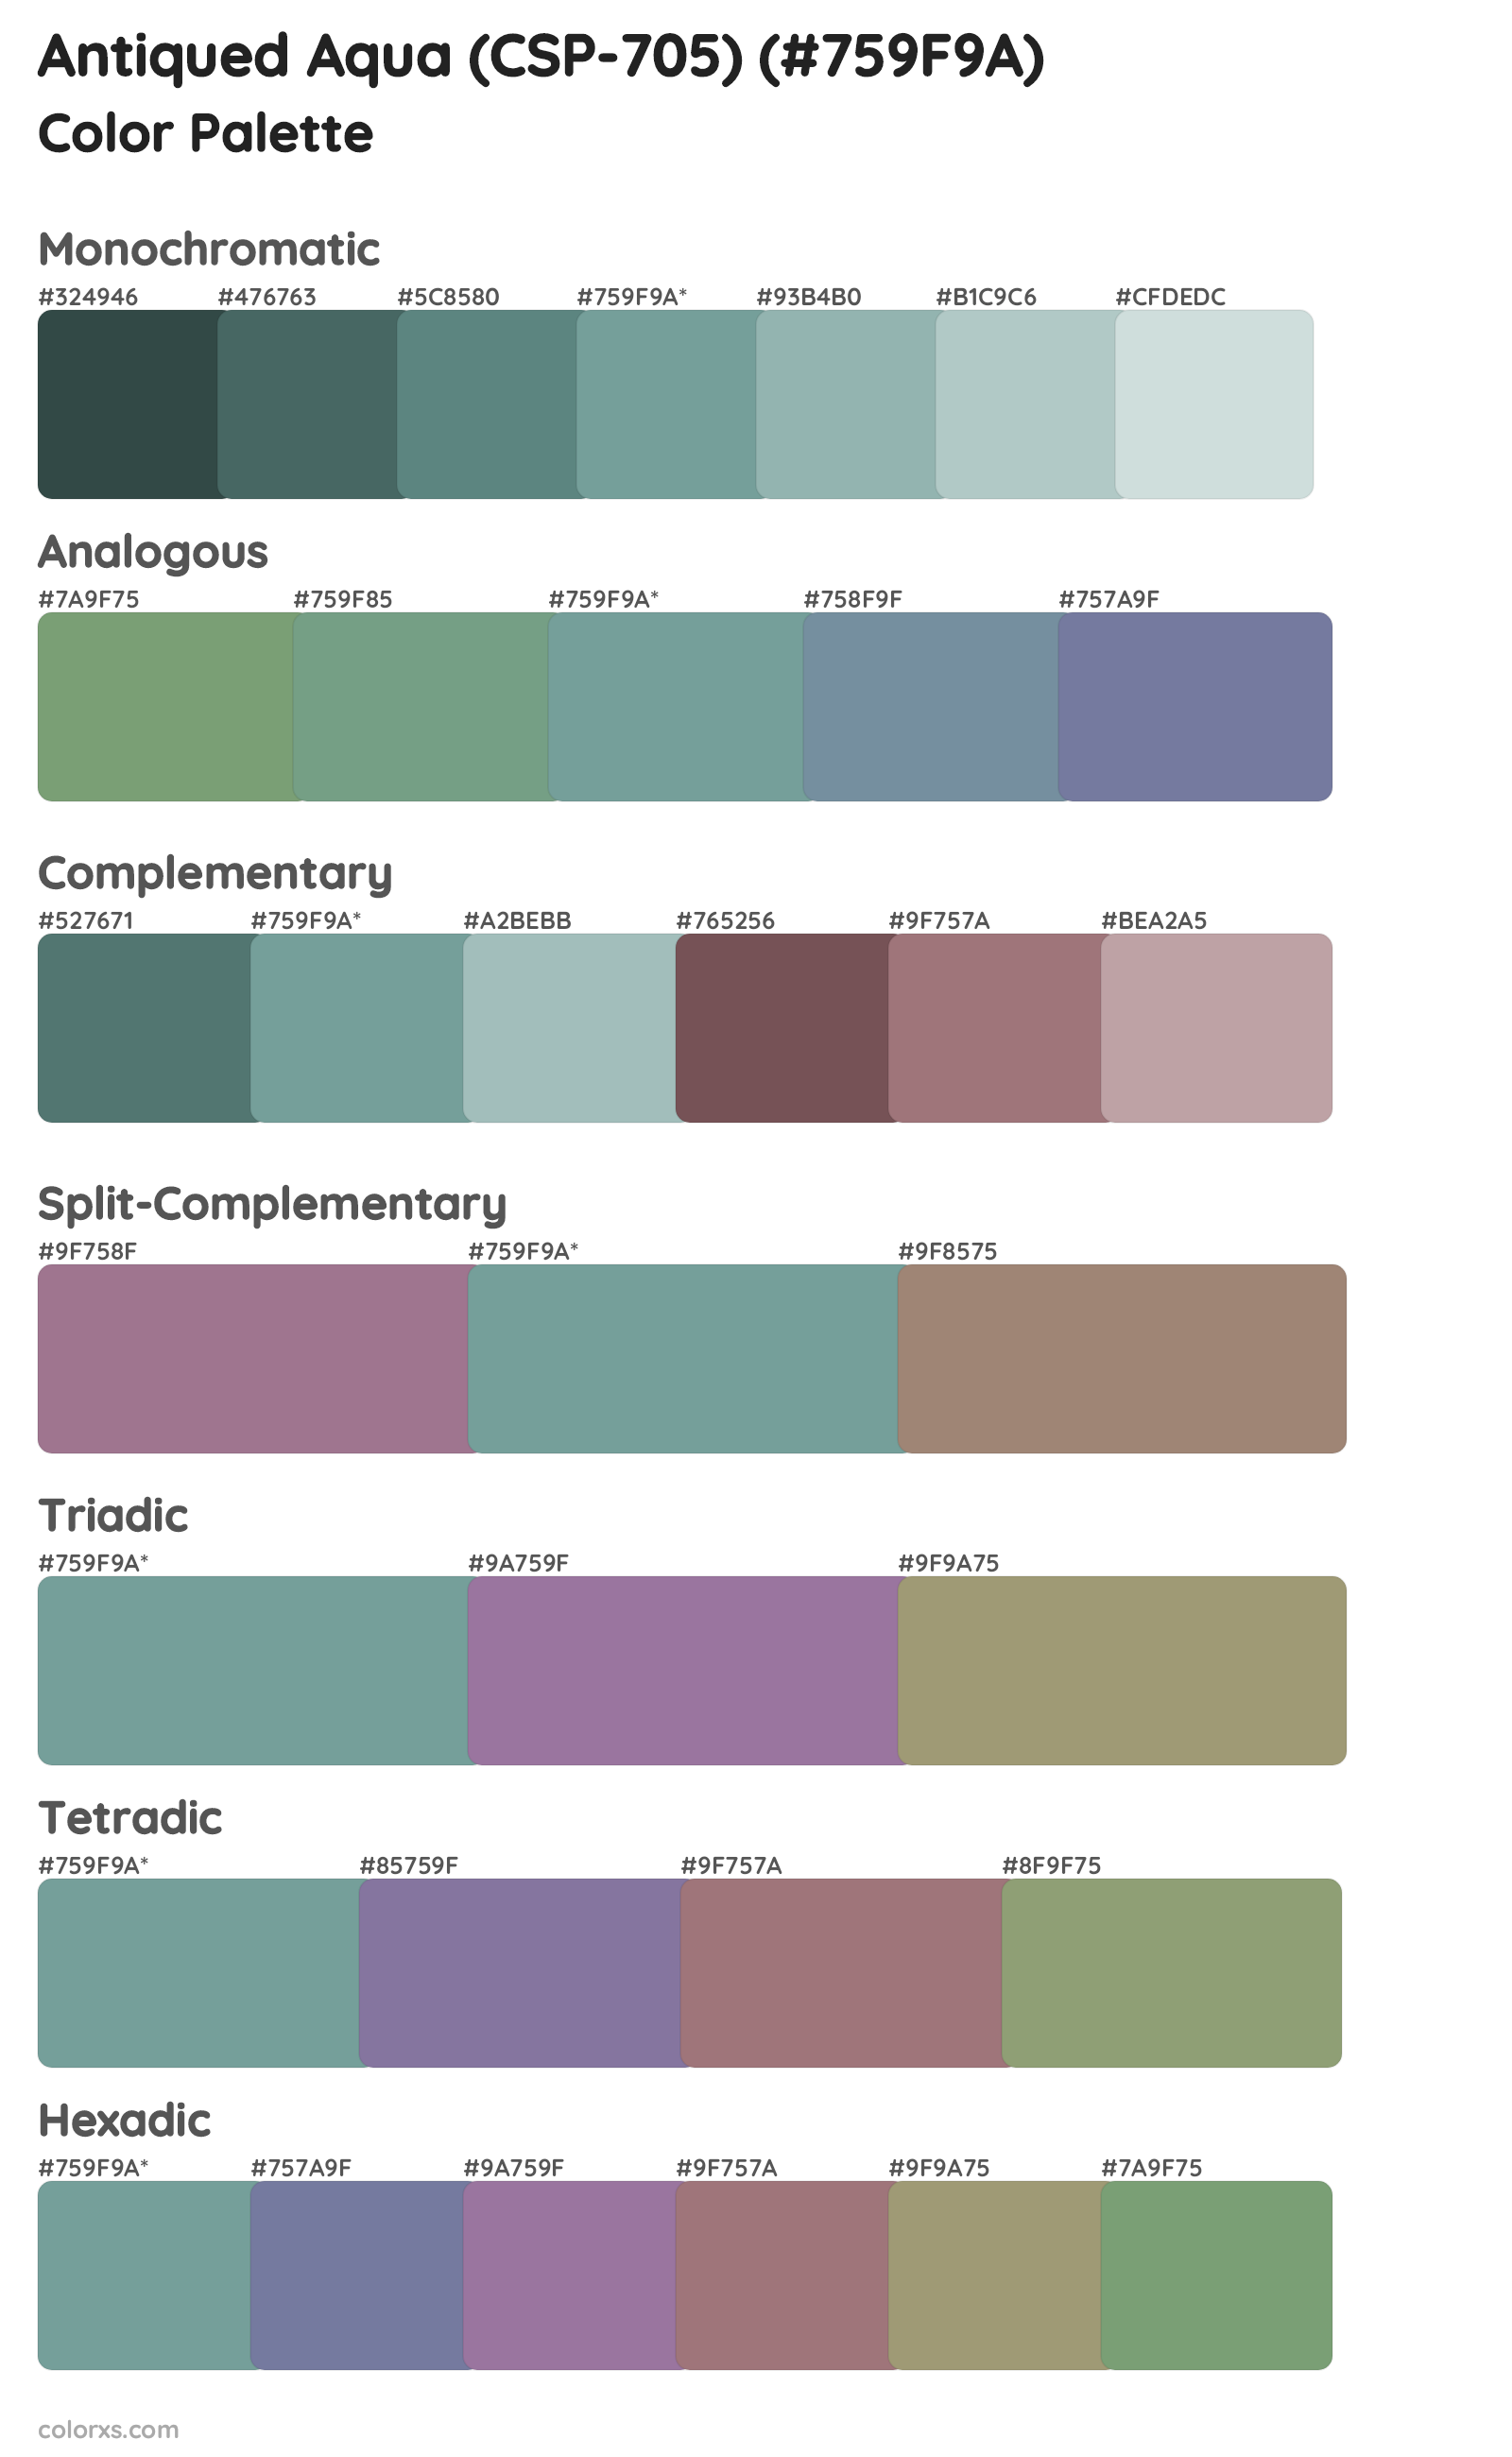 Antiqued Aqua (CSP-705) Color Scheme Palettes